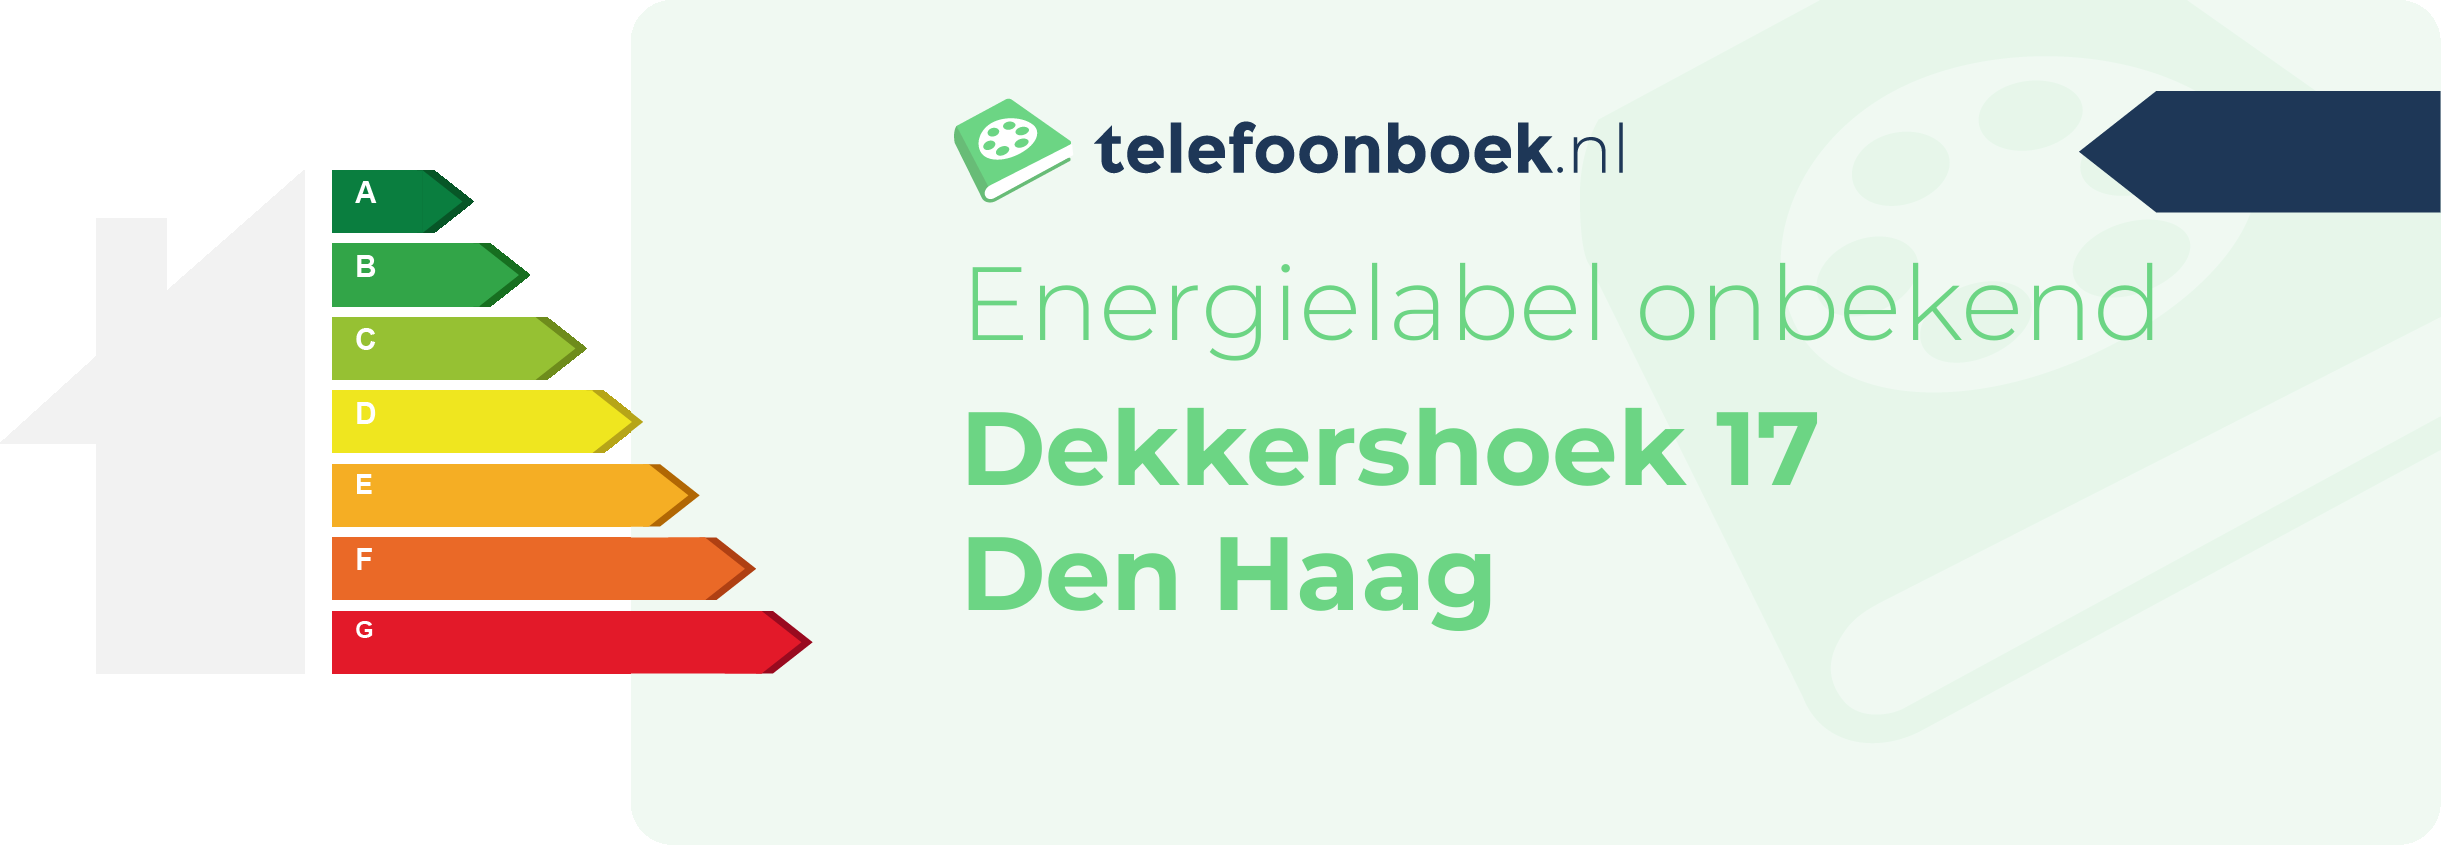 Energielabel Dekkershoek 17 Den Haag